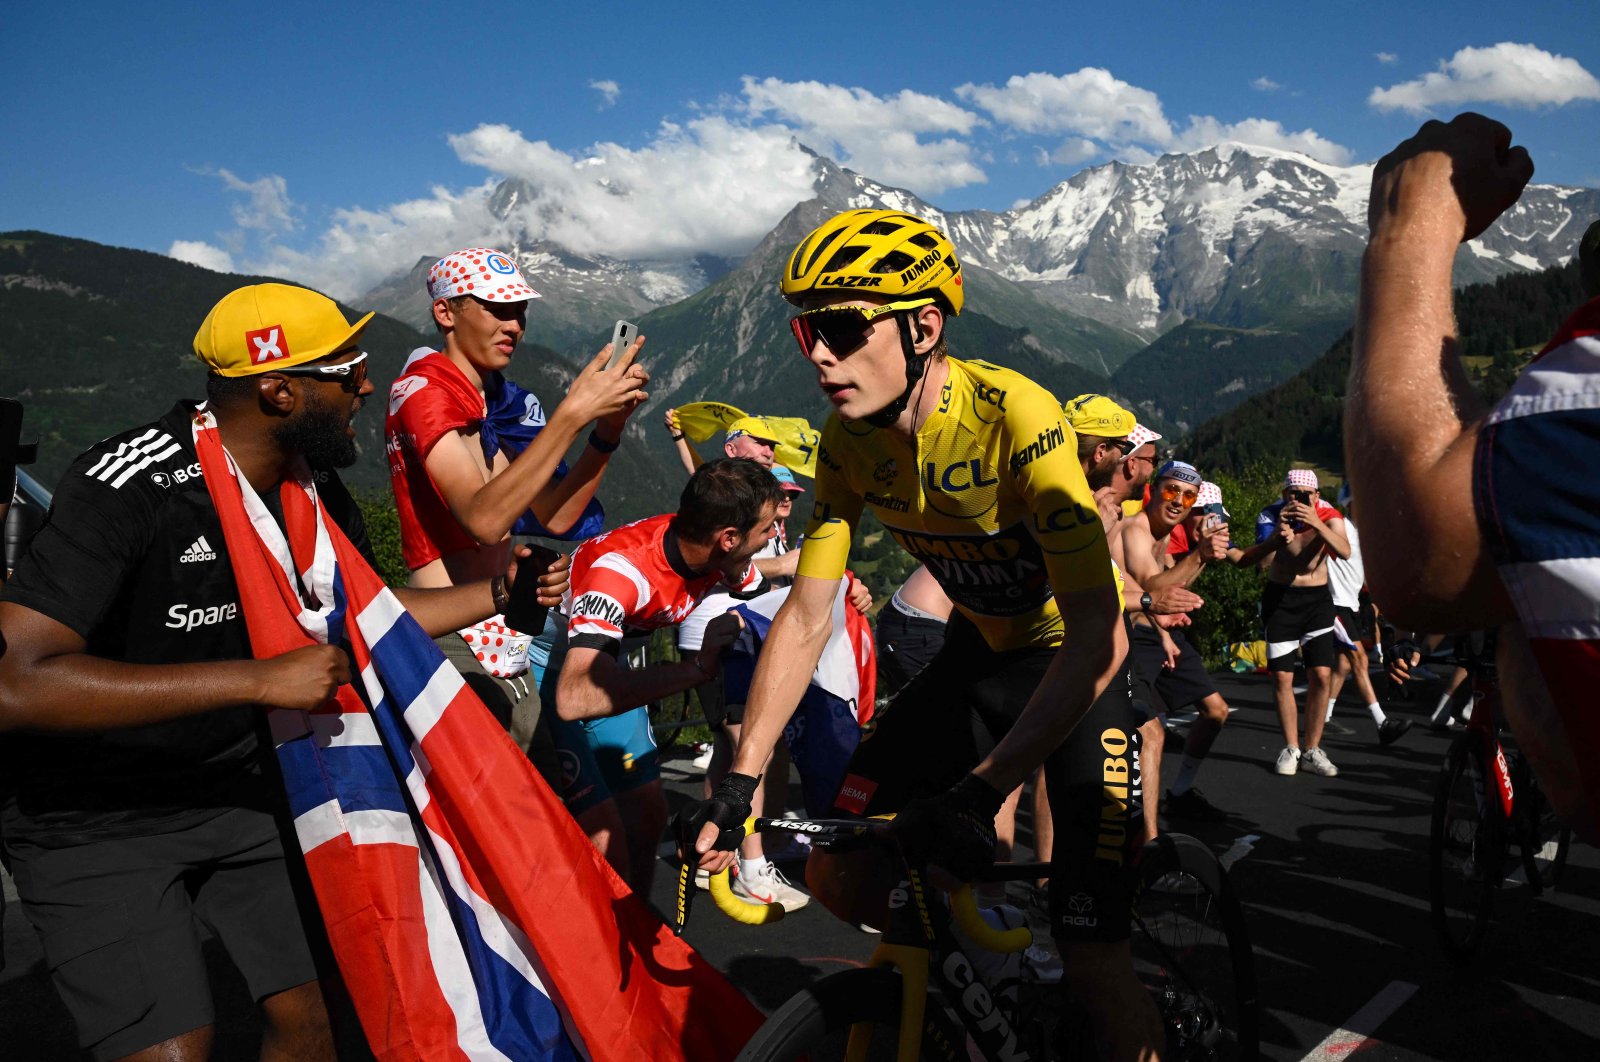 Pemimpin Tour de France mendesak penggemar untuk menghormati keselamatan pengendara